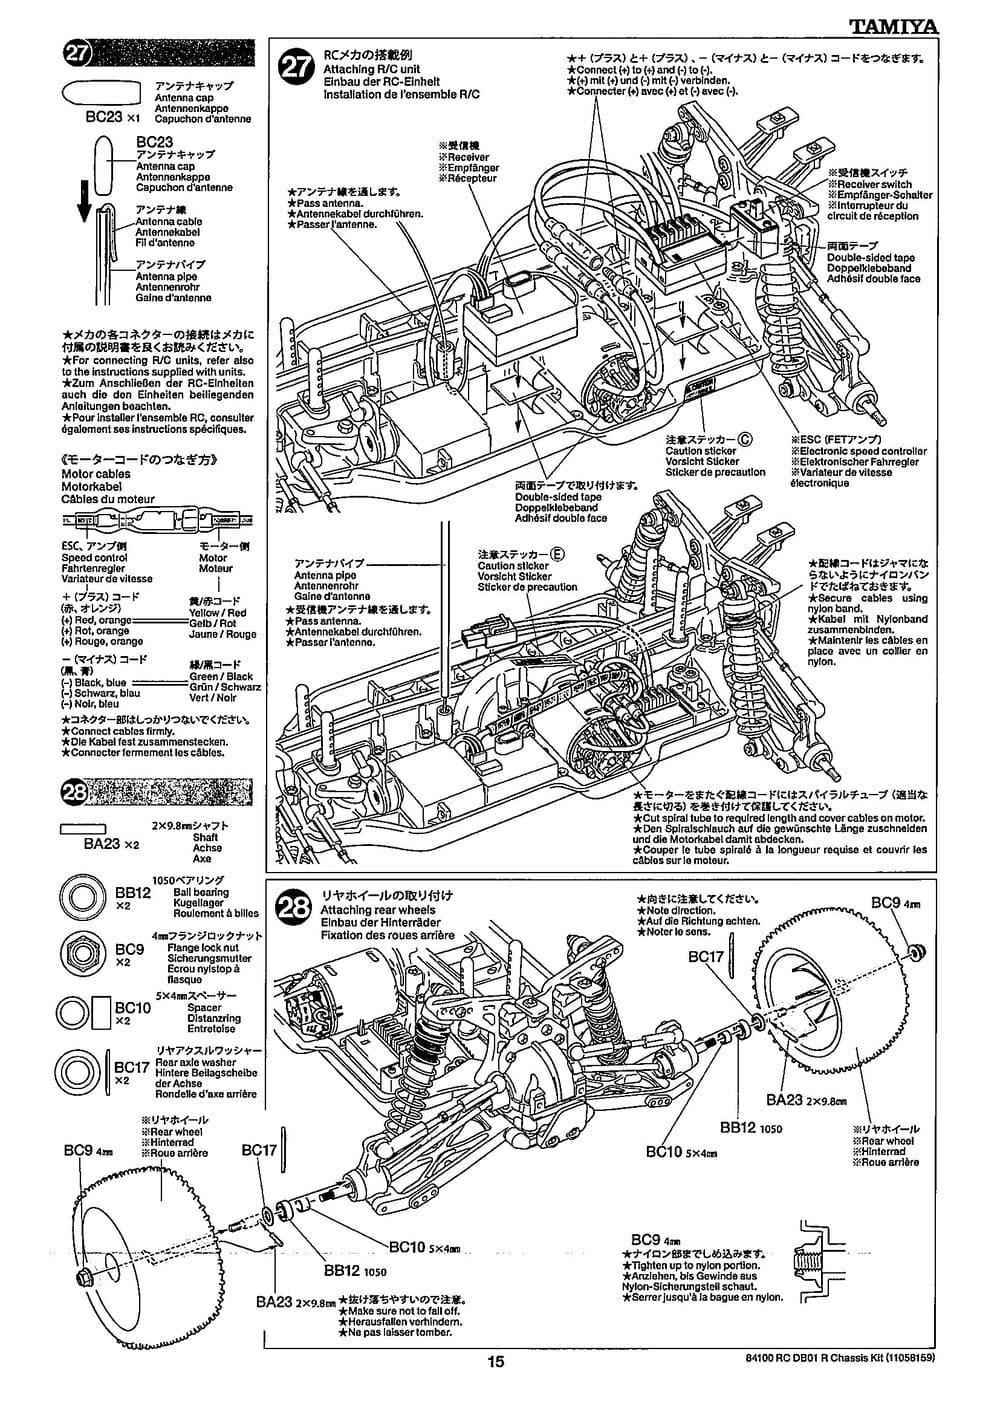 Tamiya - DB-01R Chassis - Manual - Page 15